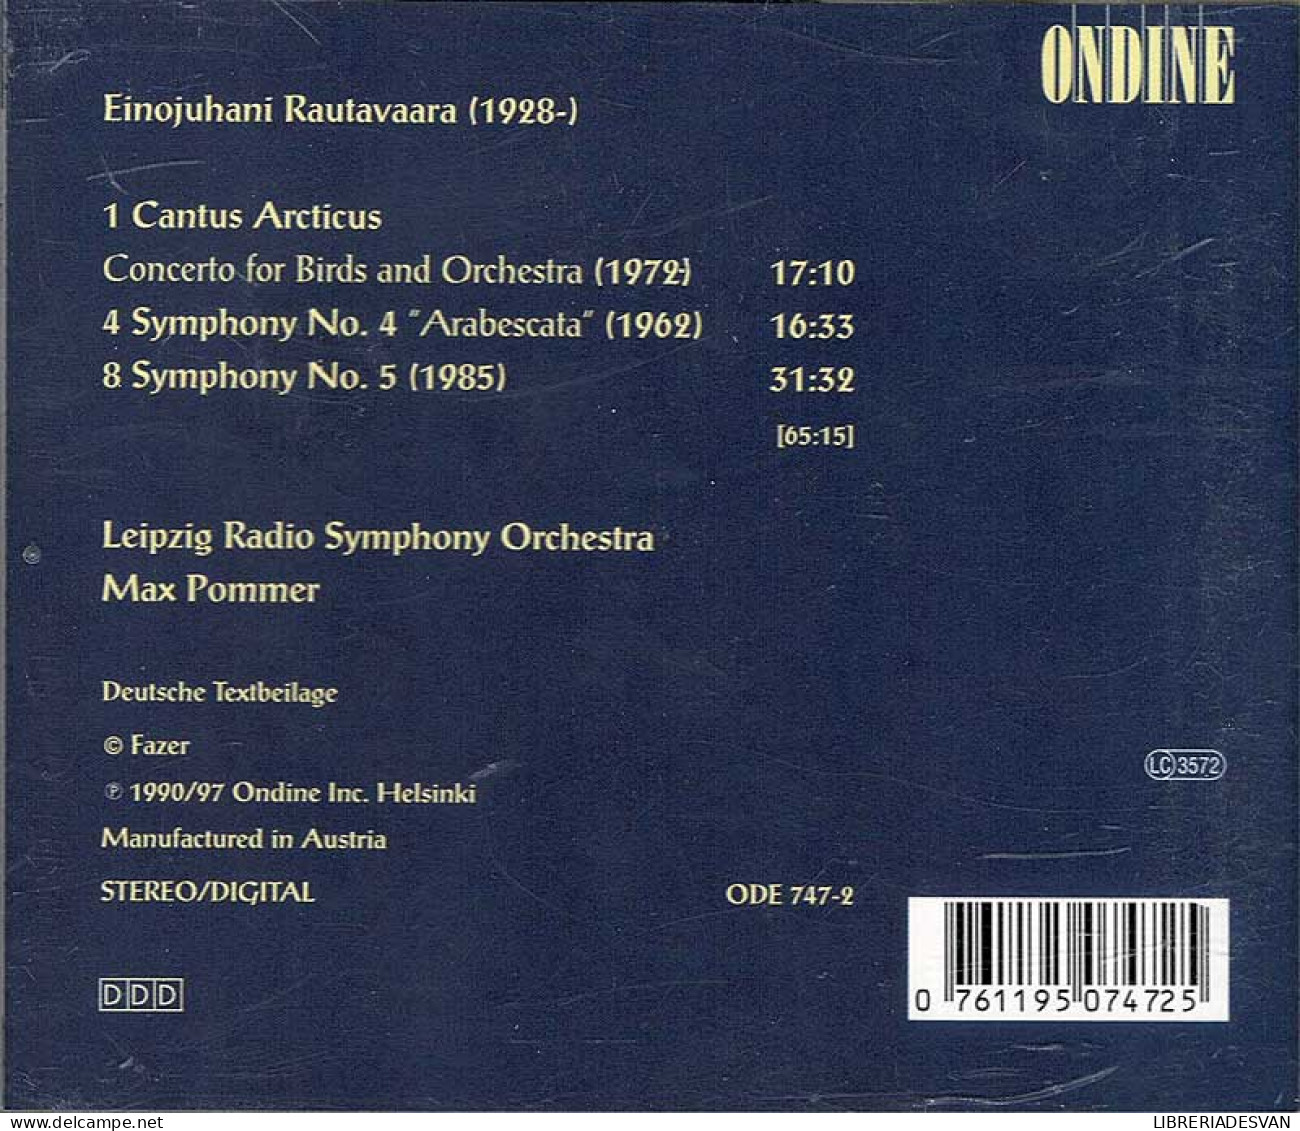 Rautavaara - Cantus Arcticus. Symphonies 4 & 5. CD - Classical